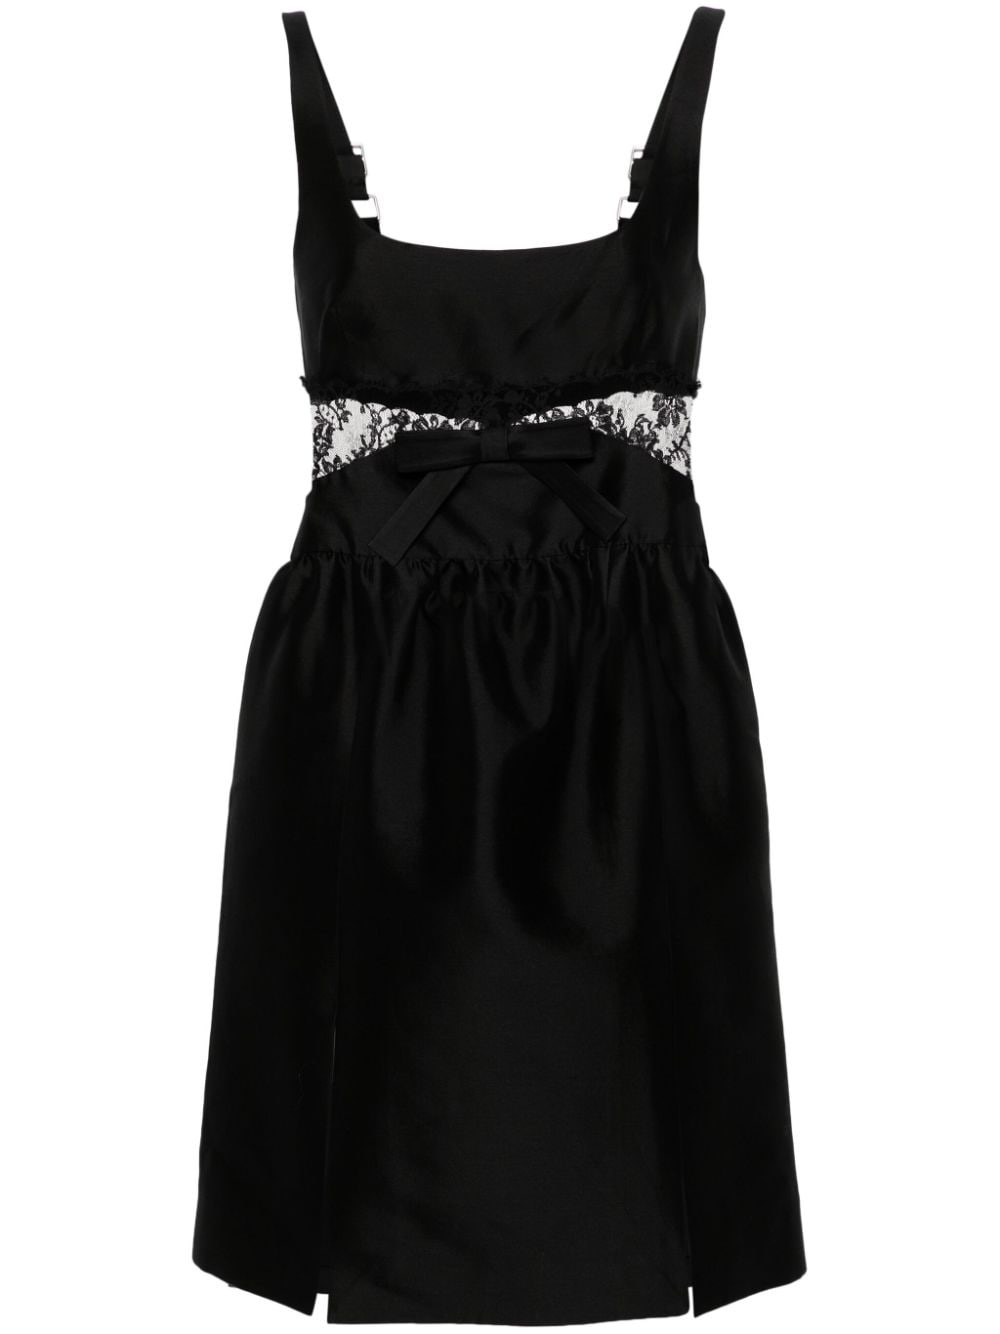 SHUSHU/TONG open-back pleated minidress - Black